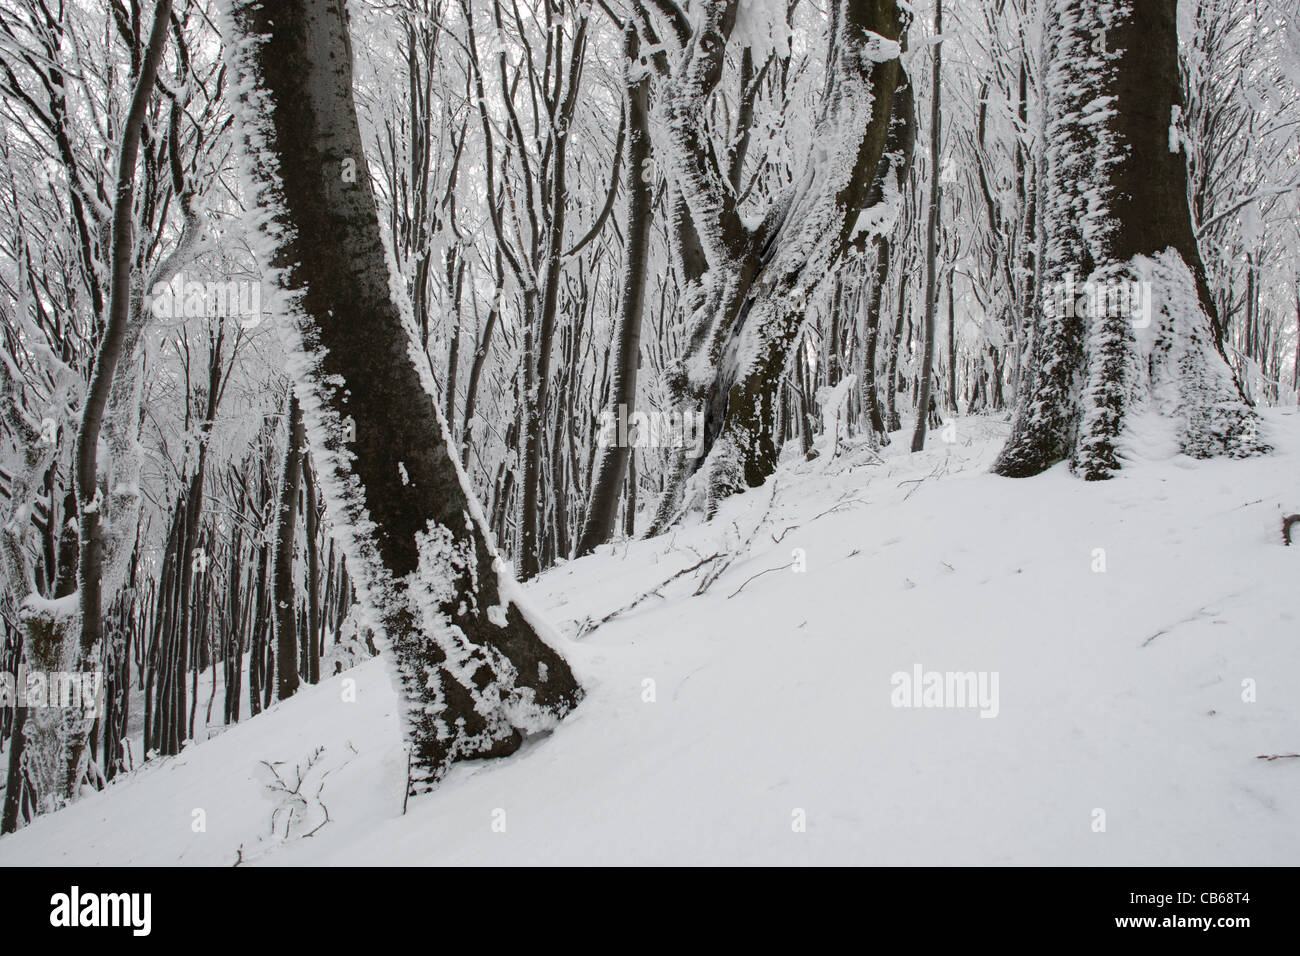 La forêt. Scène d'hiver avec des arbres dans la neige. Parc National Balkan Central. Bulgarie Banque D'Images